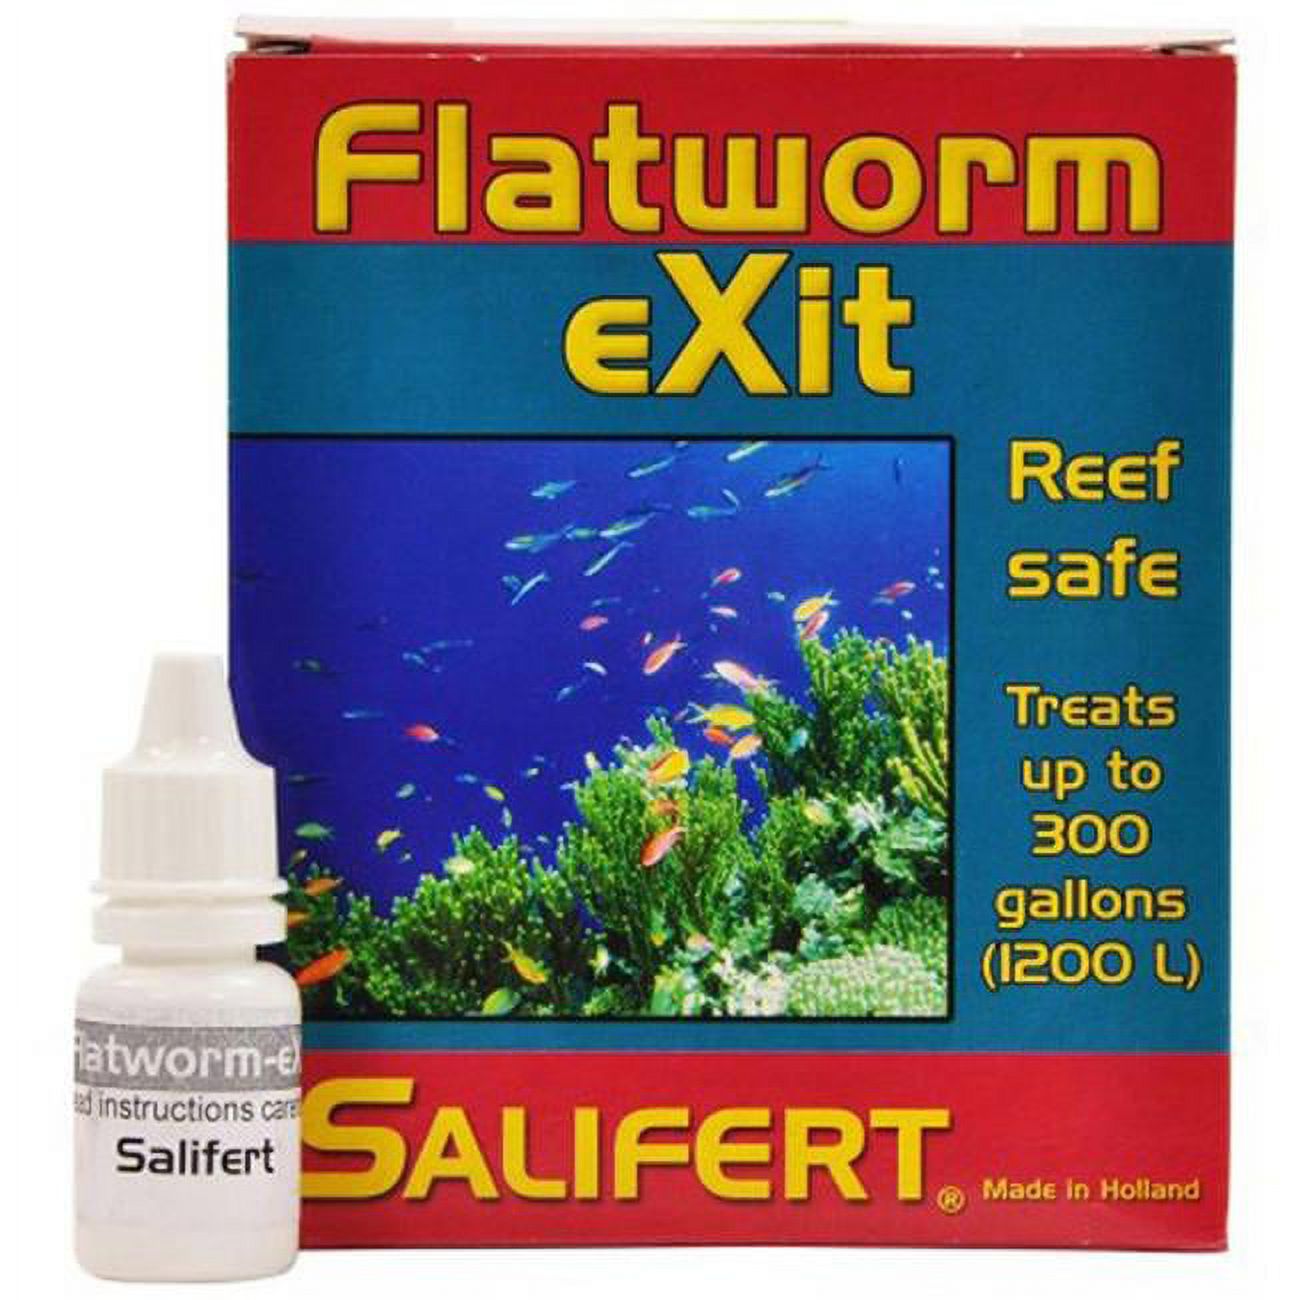 All Seas Marine 8714079180014 10 ml Salifert Flatworm Exit Treatment - image 1 of 4